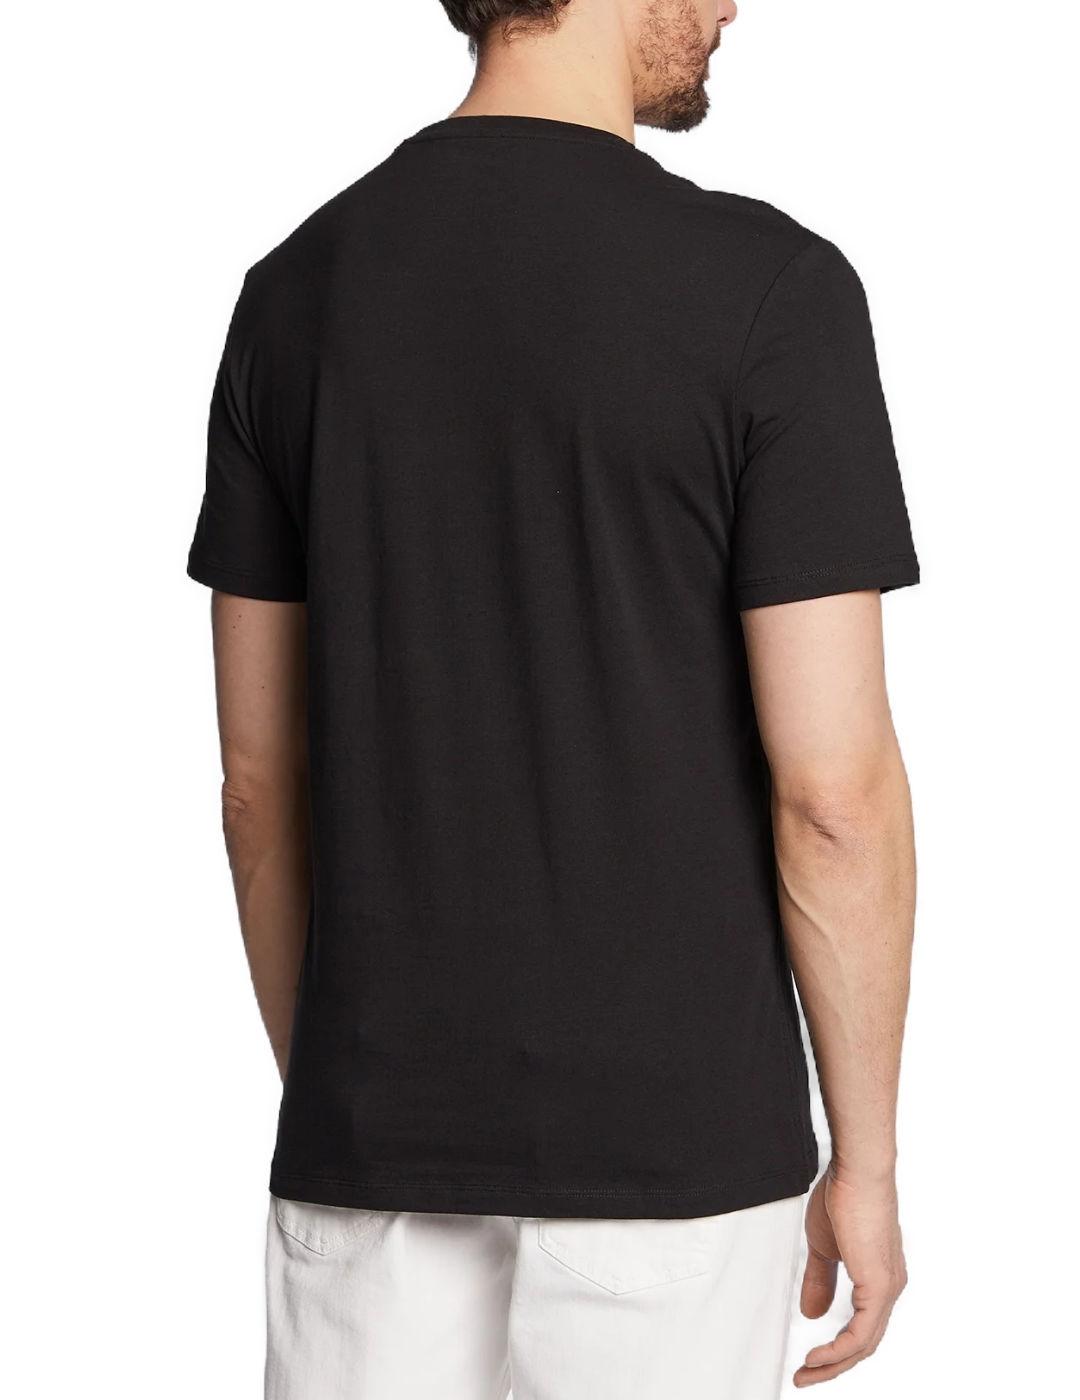 Camiseta Guess Shiny negro manga corta para hombre